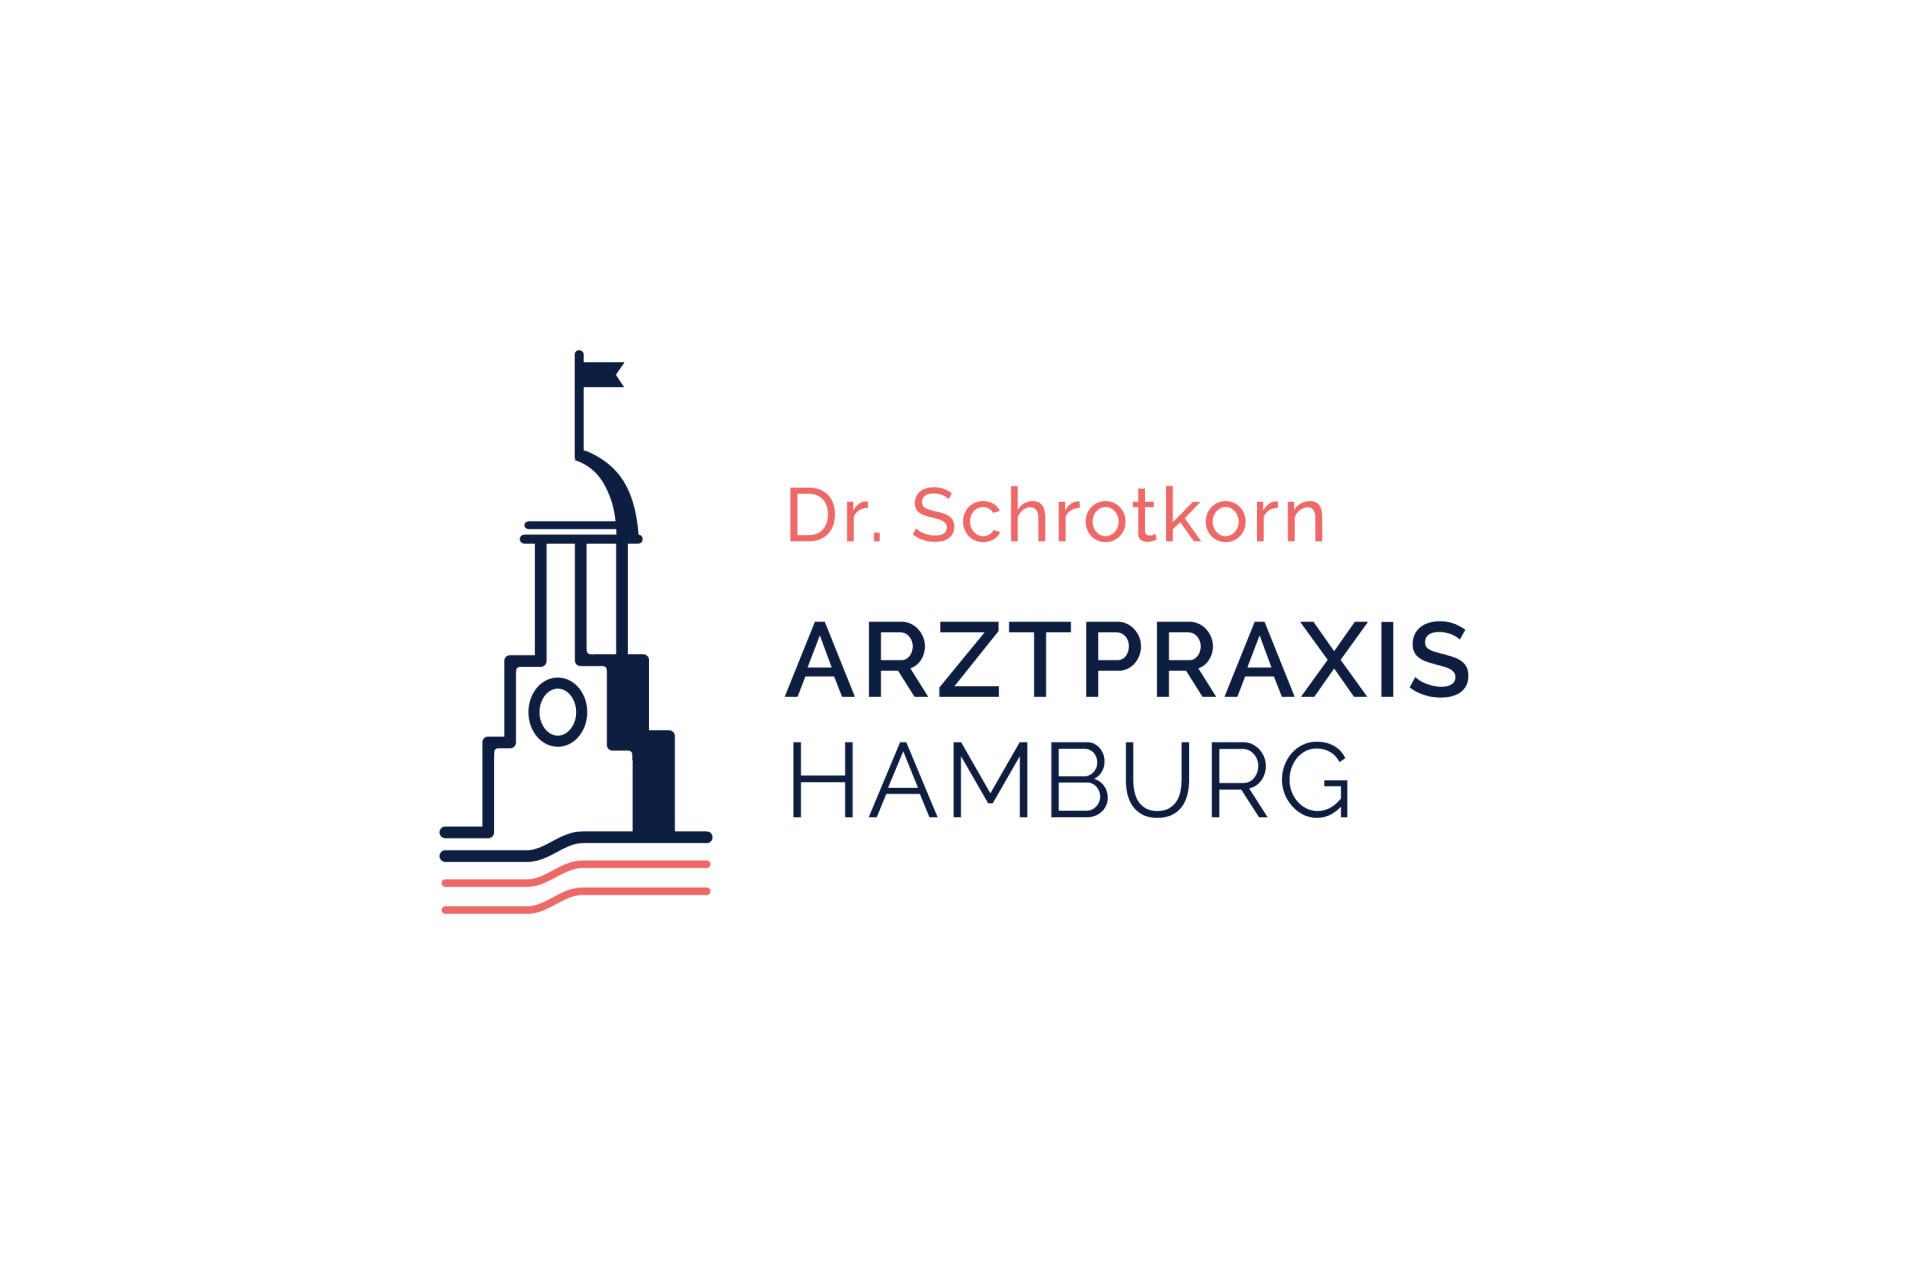 Praxislogo für die Arztpraxis Hamburg Dr. Schrotkorn